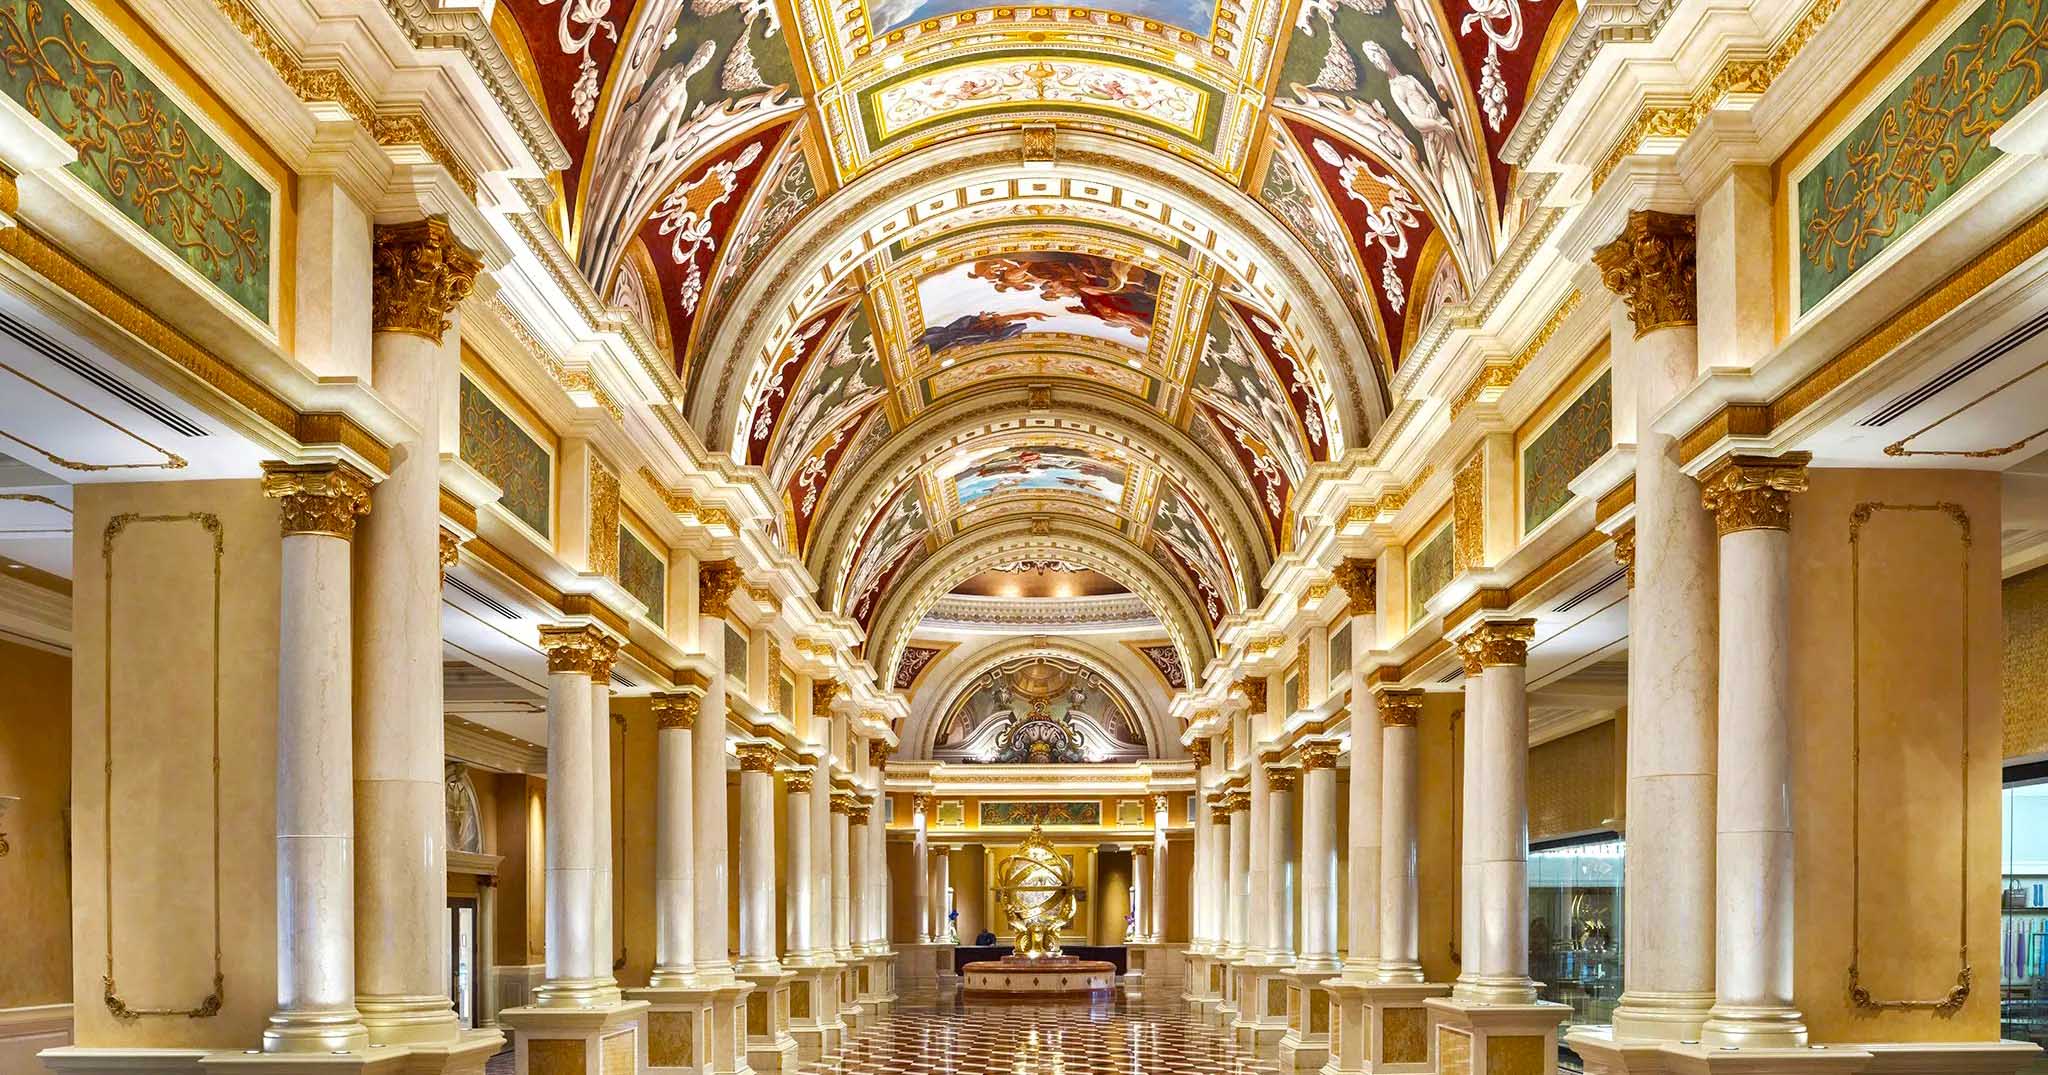 Las Vegas Hotels - Best Hotels in Las Vegas - Caesars Experience Vegas